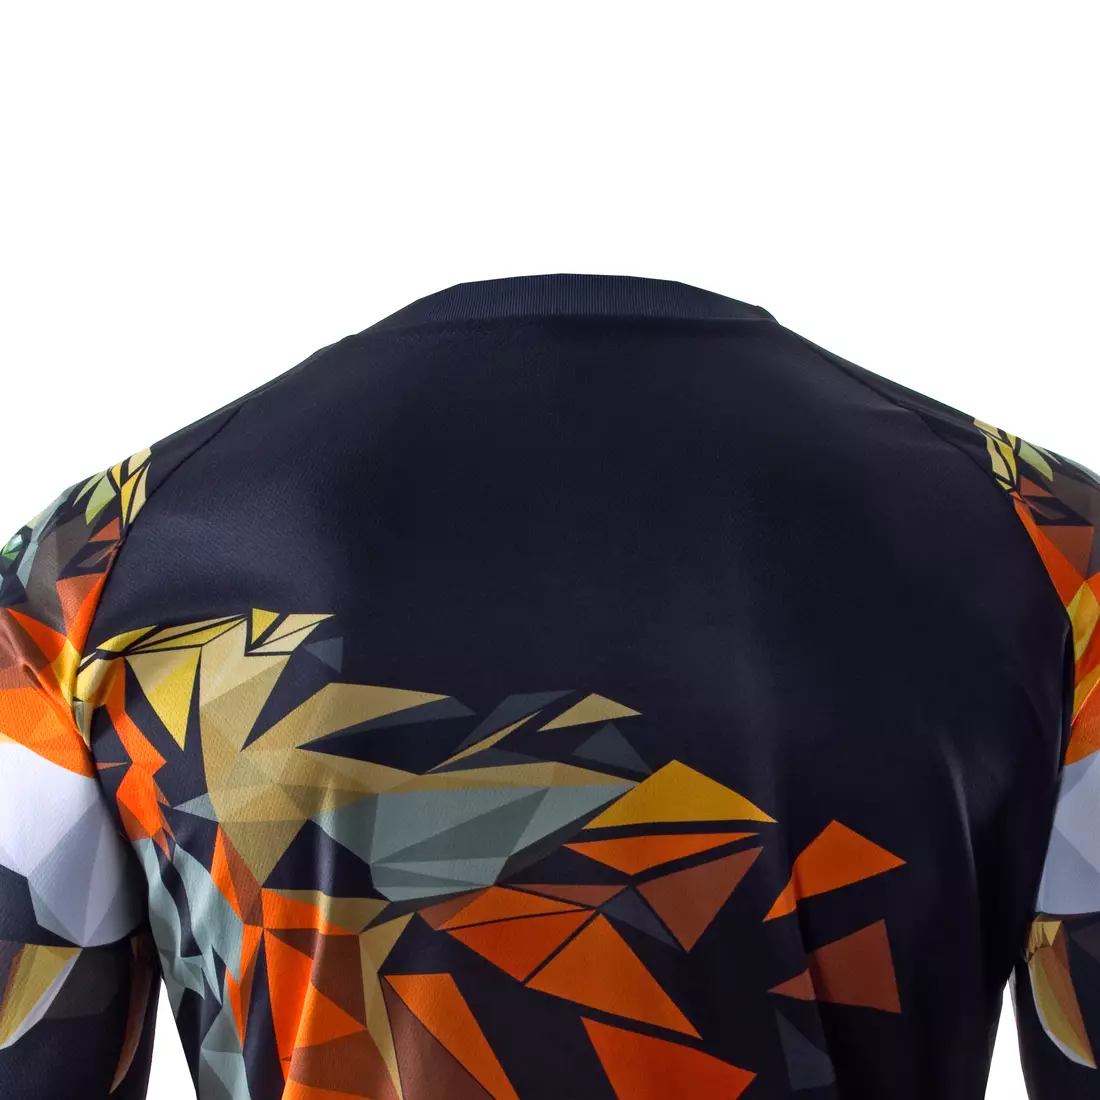 KAYMAQ DESIGN M79 tricou de ciclism MTB / enduro pentru bărbați, cu mâneci lungi, negre